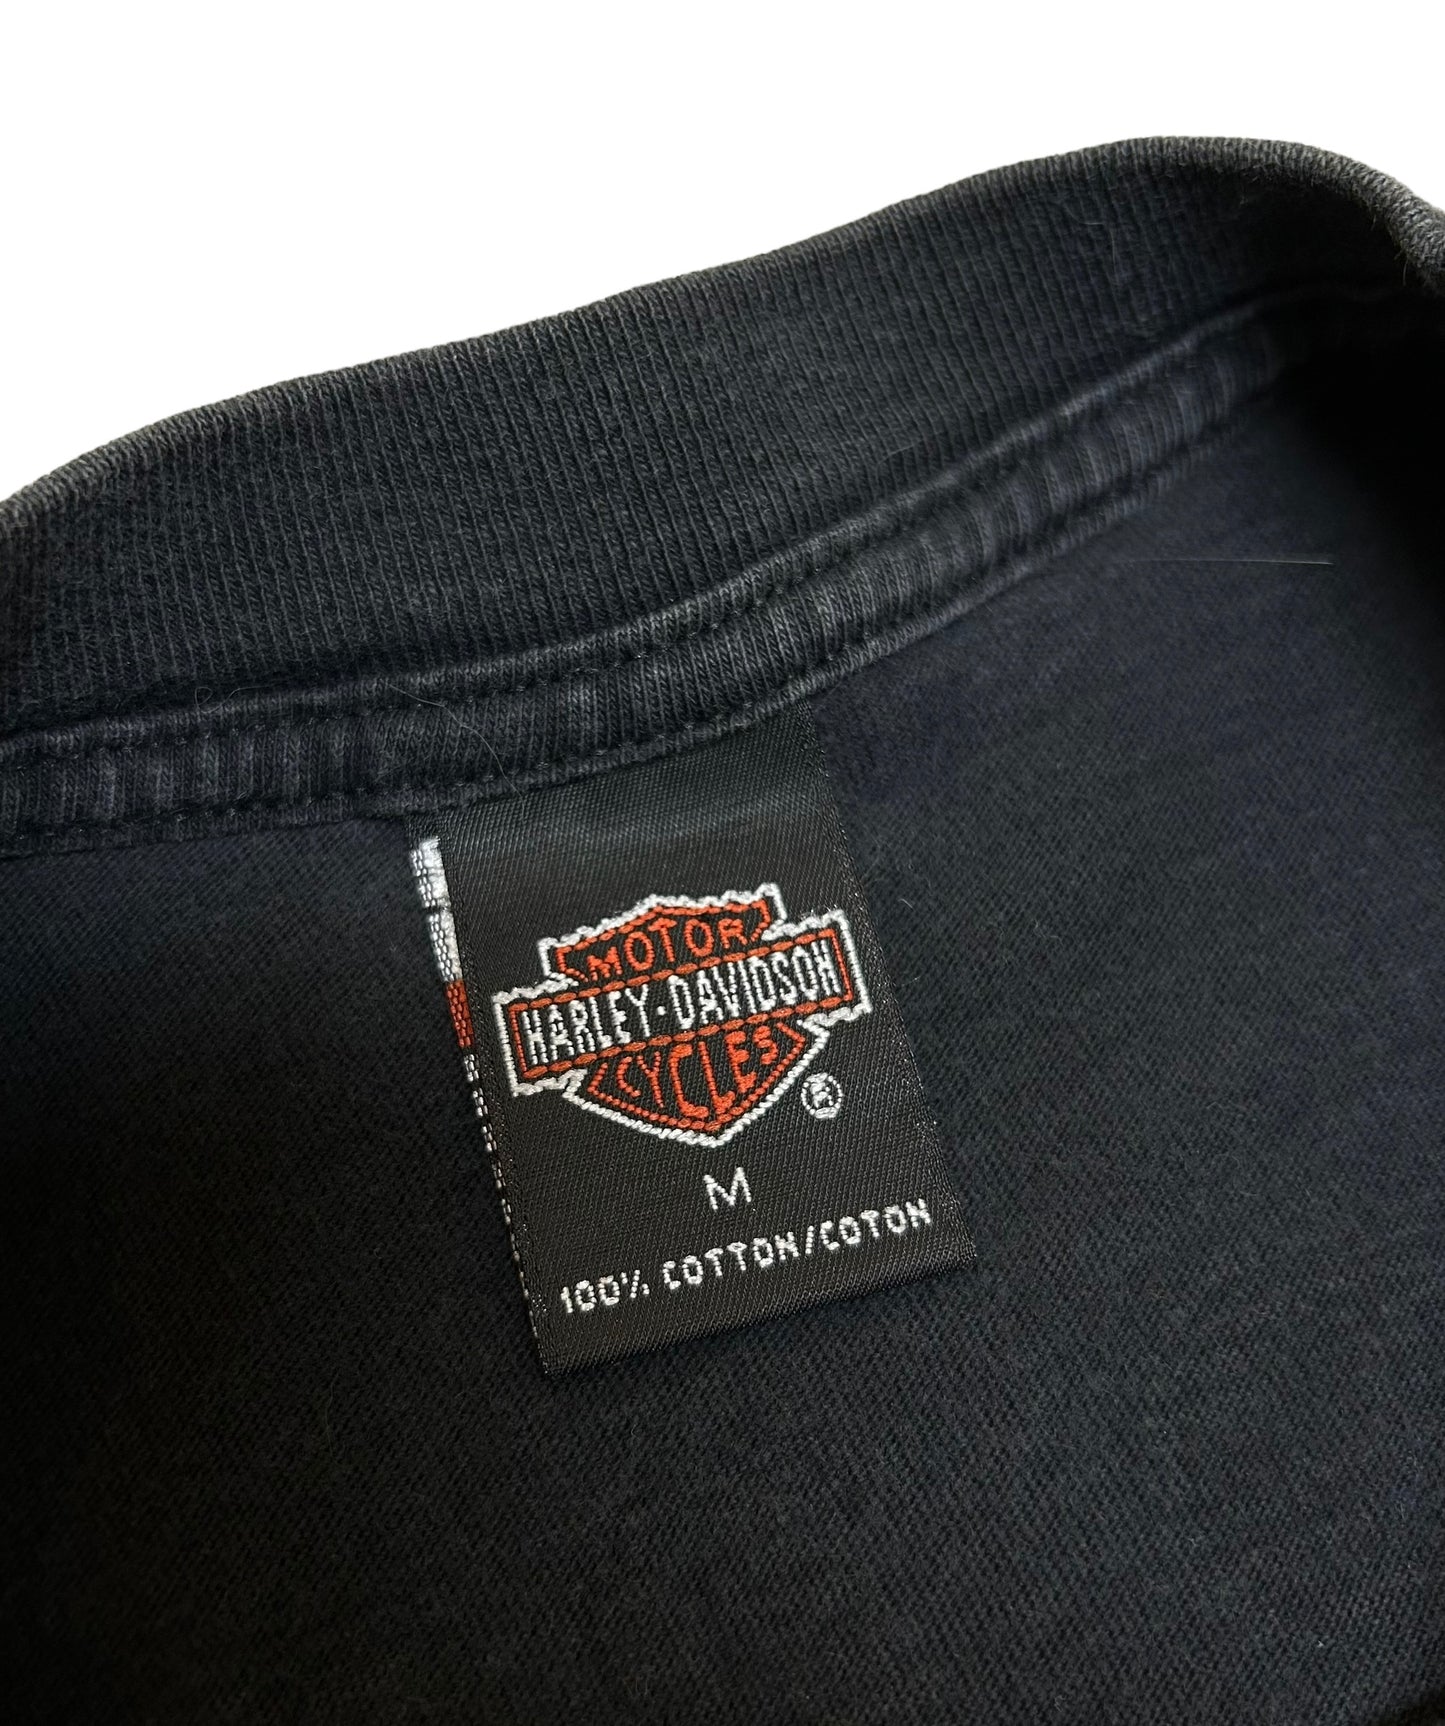 Vintage 1990s “Super Bikes” Harley Davidson St Maarten, N.A. Black Graphic T-Shirt - Size Medium